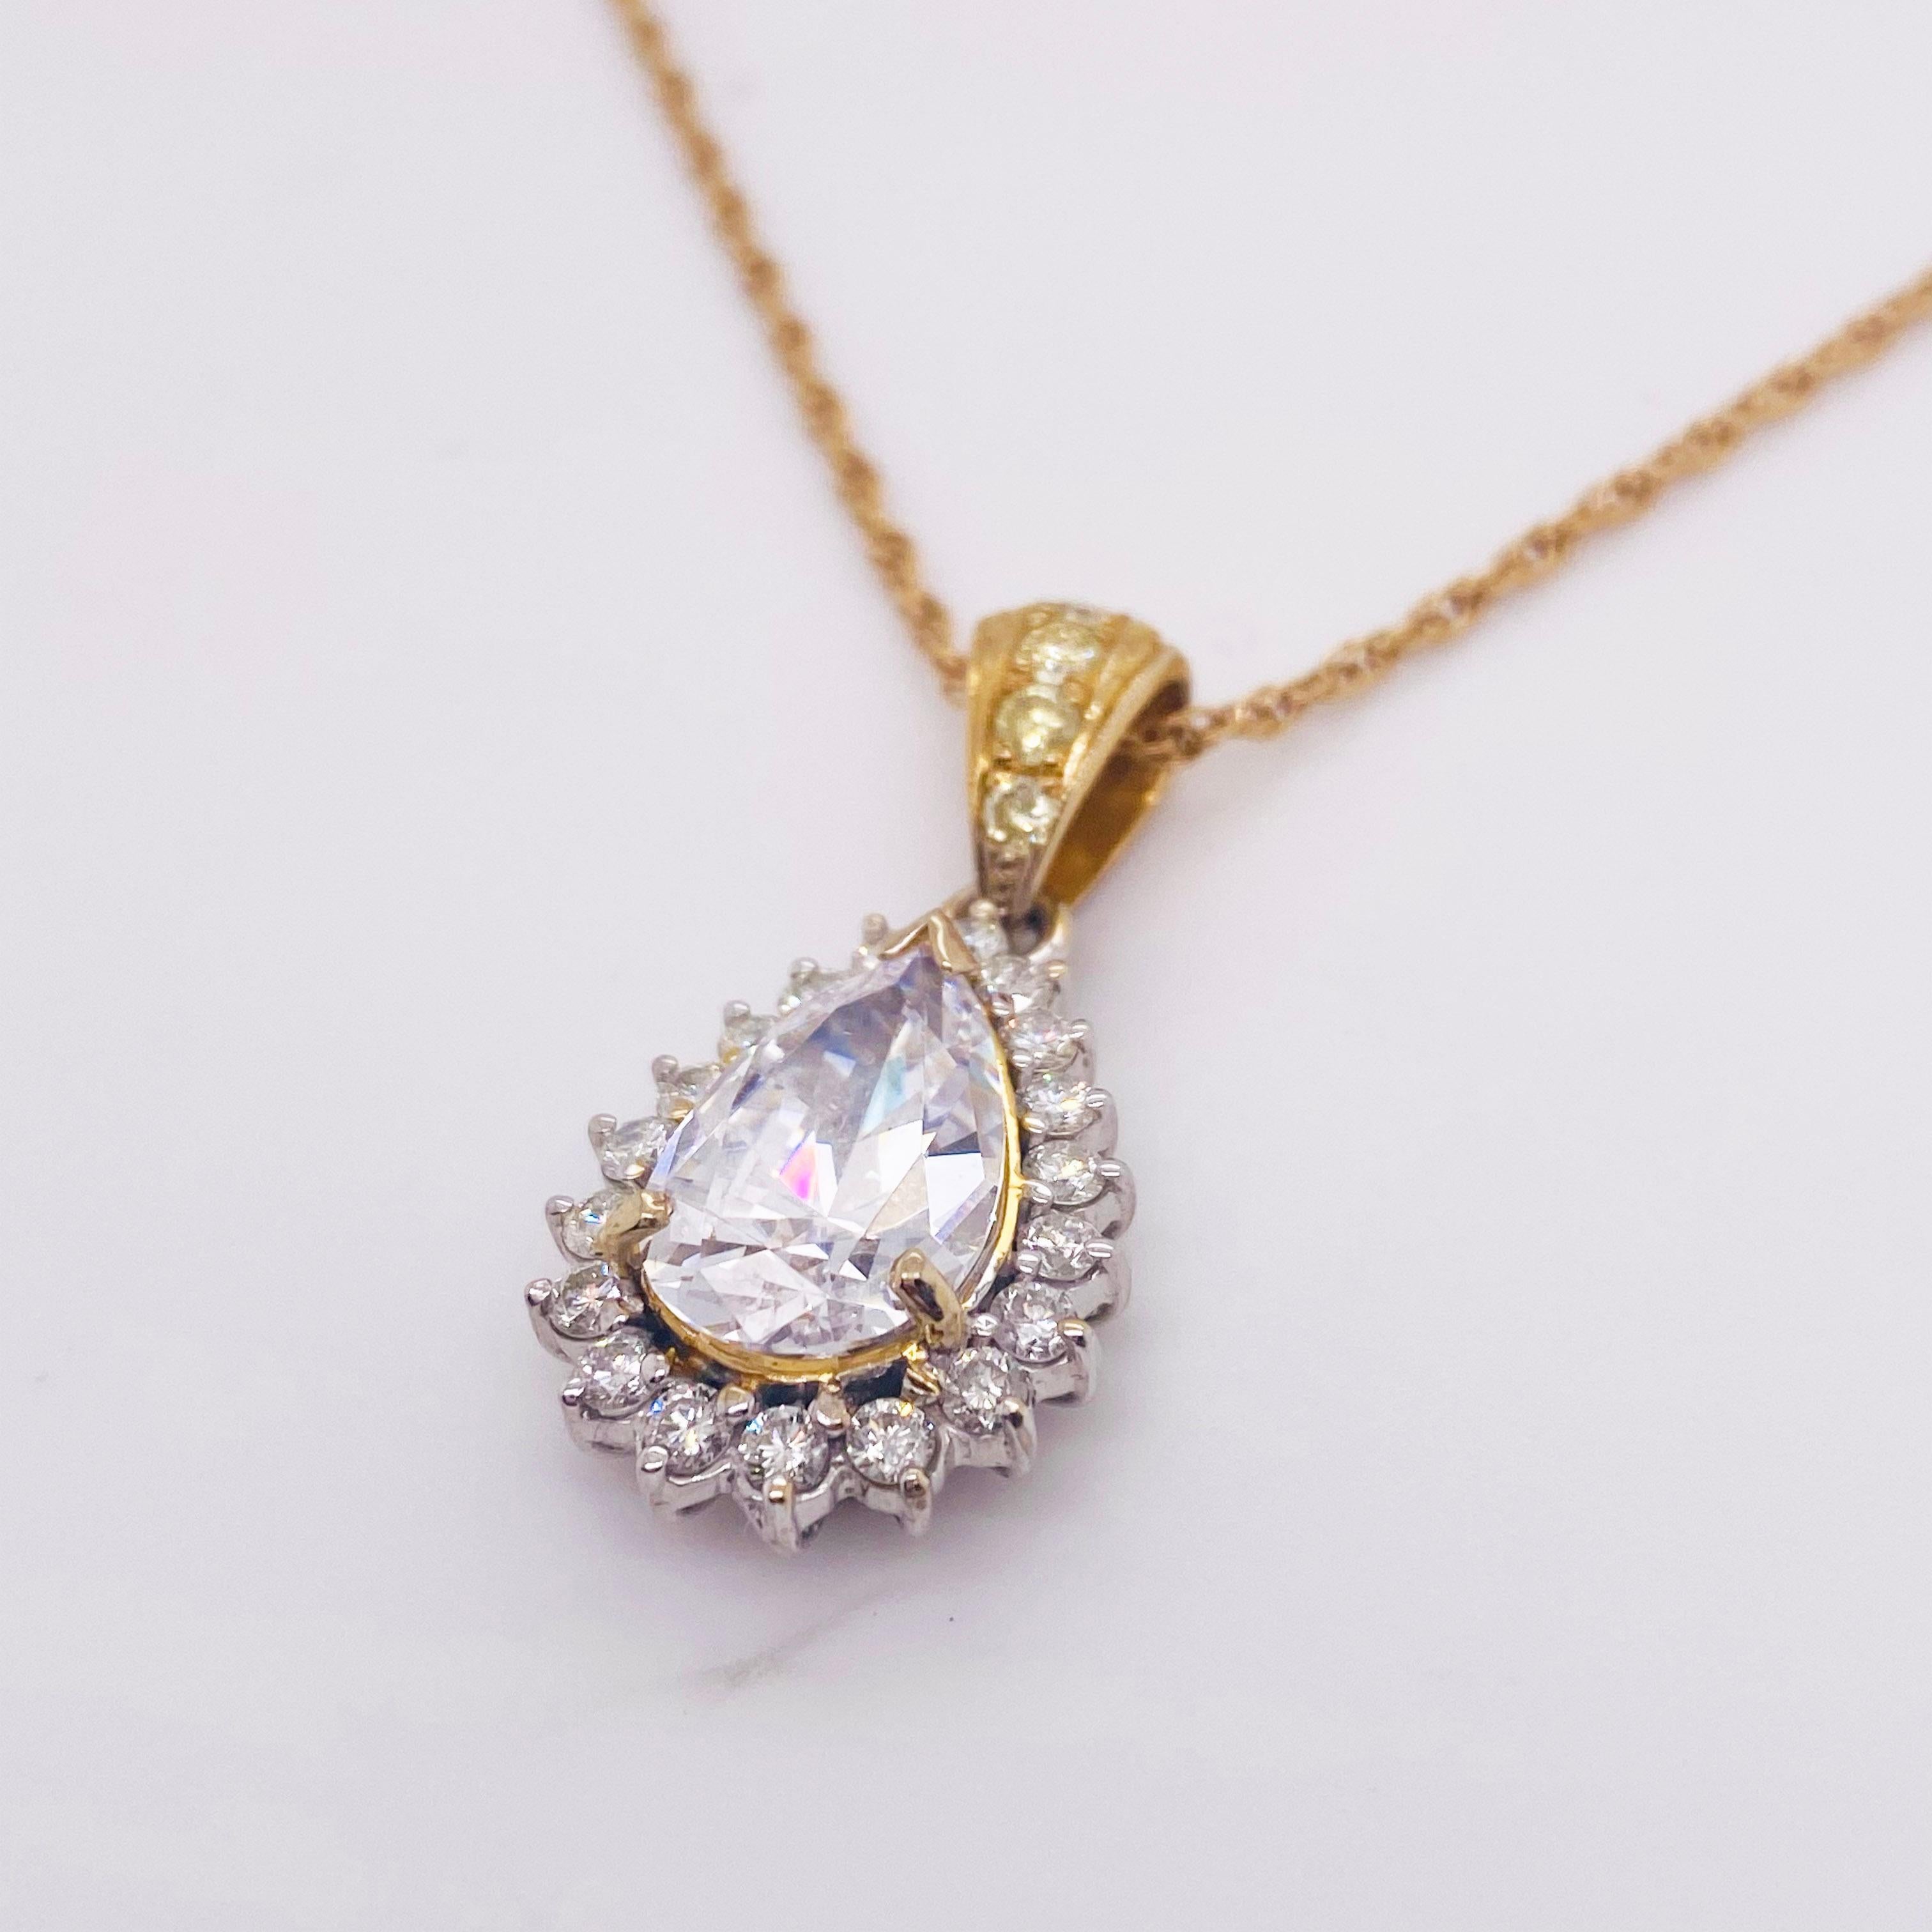 Ce magnifique pendentif en diamant est serti d'un halo de diamants. Il est délicatement suspendu à une chaîne en corde d'or jaune 18 carats qui complète l'or du pendentif. Cette pièce apportera une élégance raffinée à tous vos looks. Les diamants